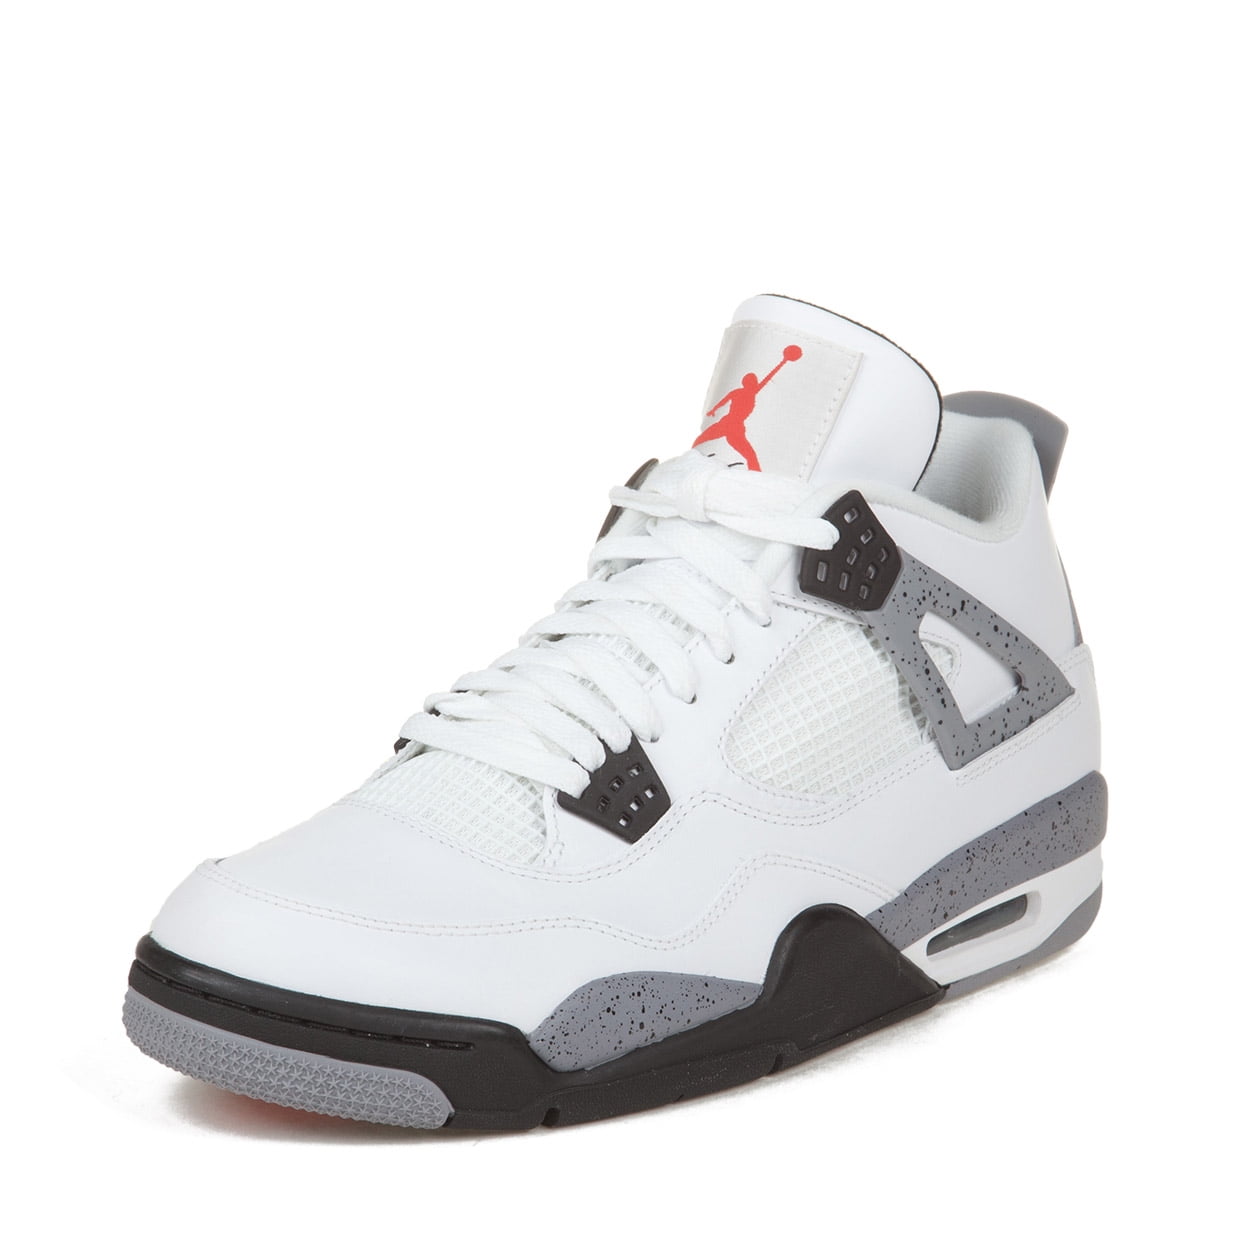 Air Jordan - Nike Mens Air Jordan 4 Retro 